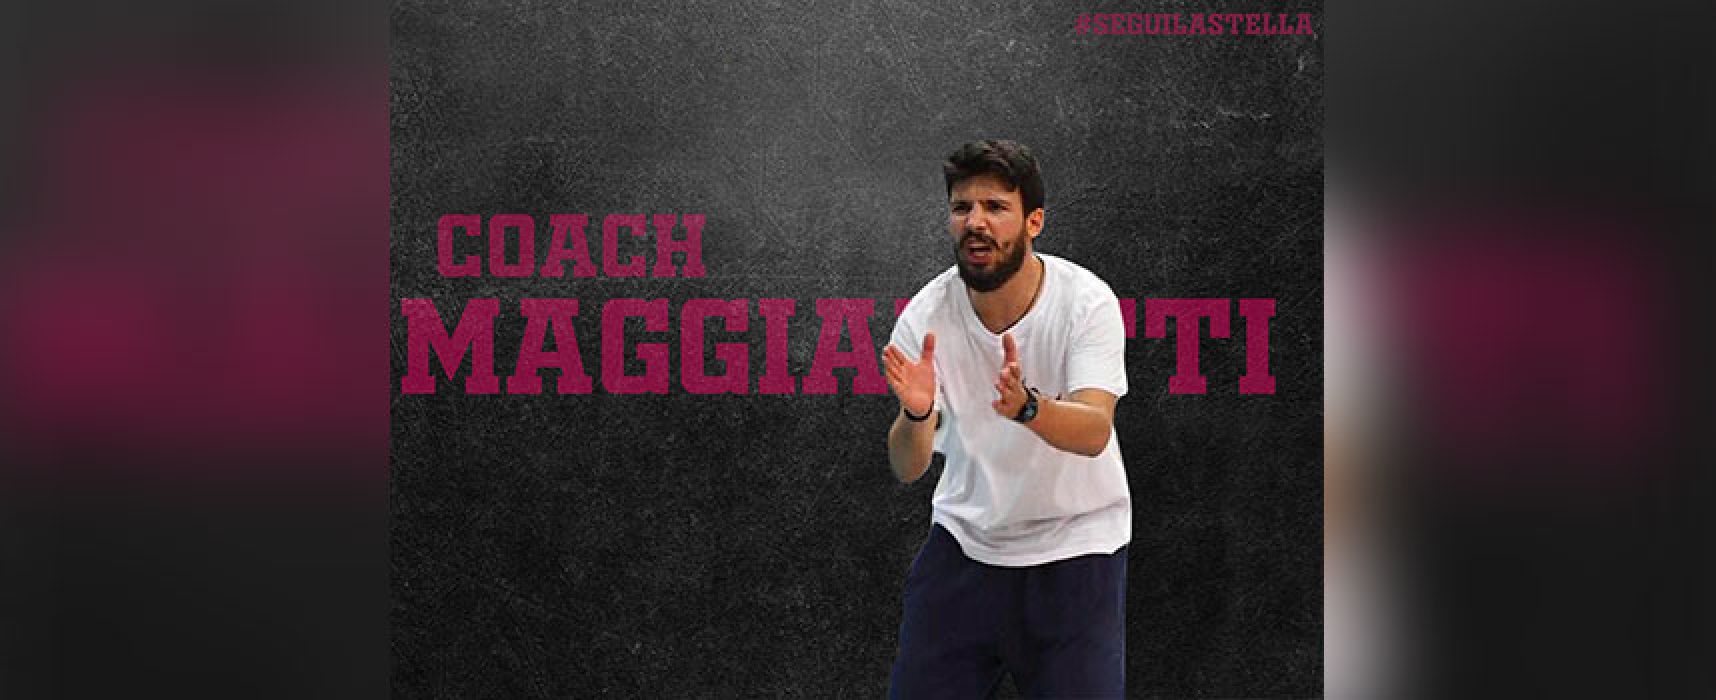 La Star Volley Bisceglie riparte da coach Maggialetti